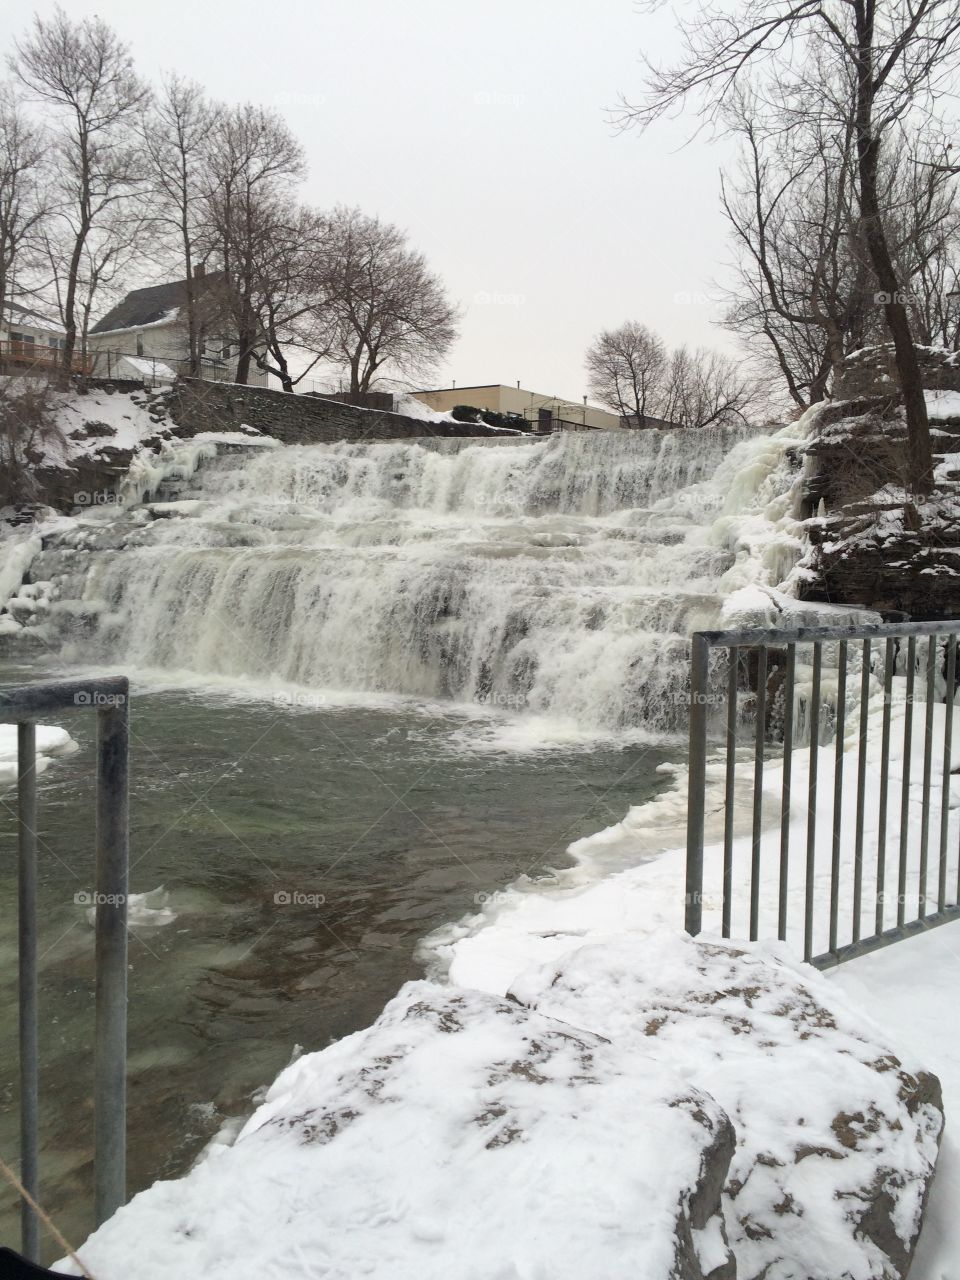 Glen park winter waterfall scene